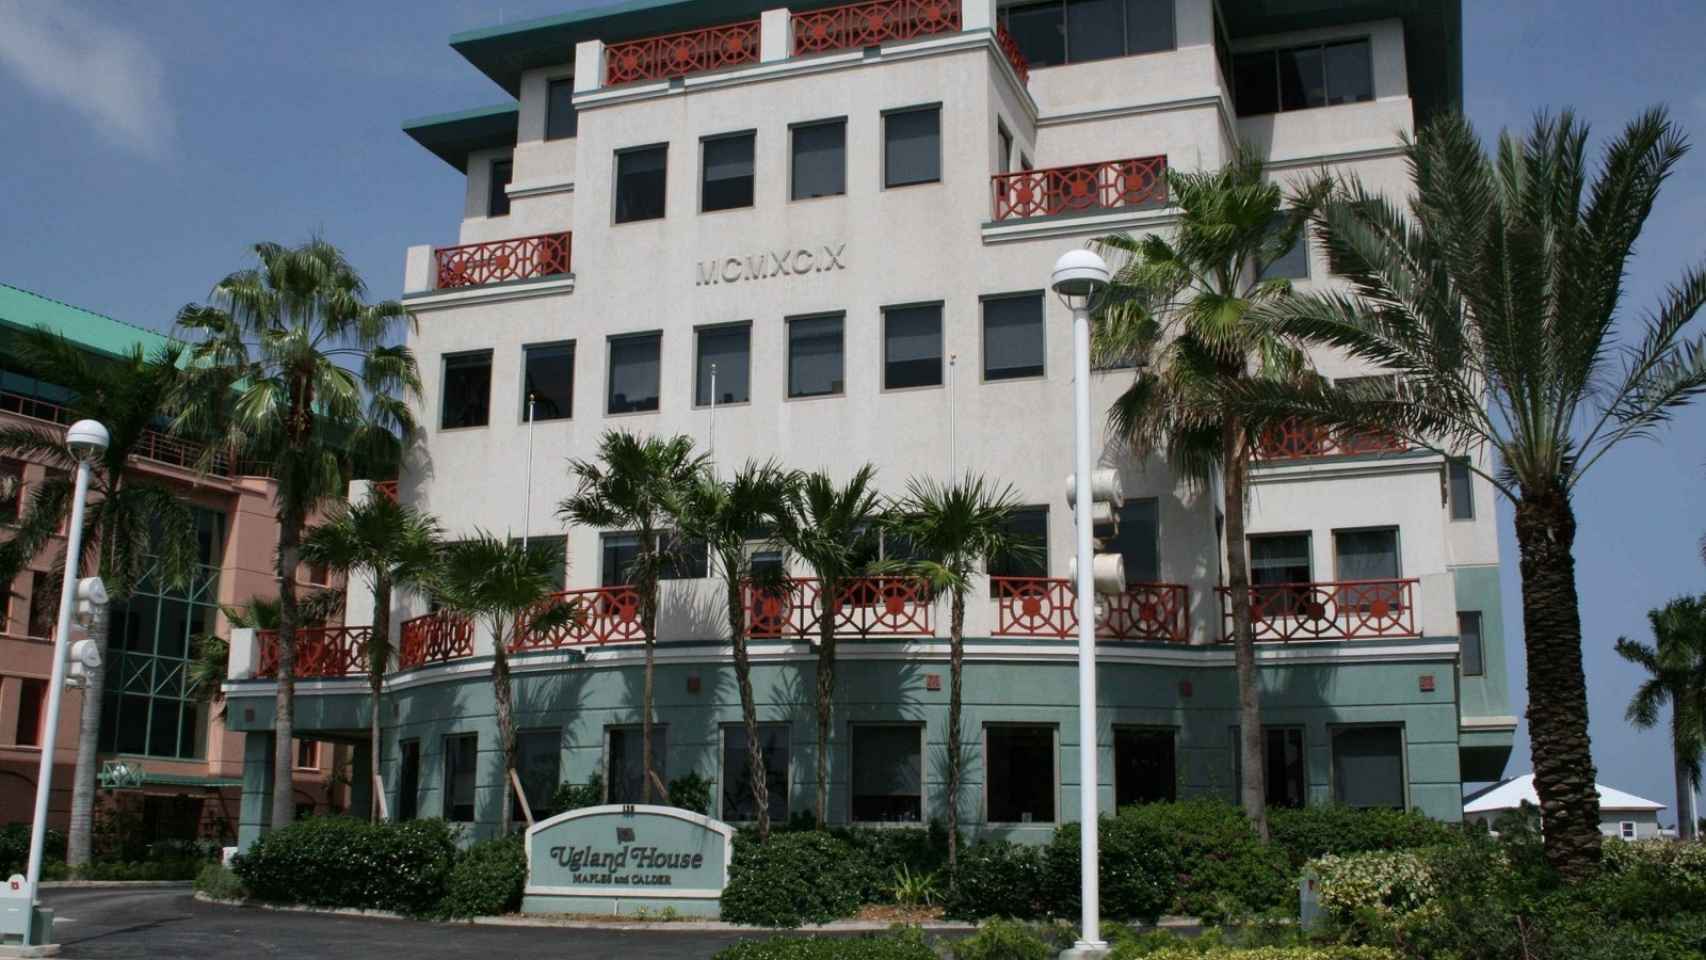 Ugland House, sede de más de 20.000 sociedades en George Town, capital de las Islas Caimán.